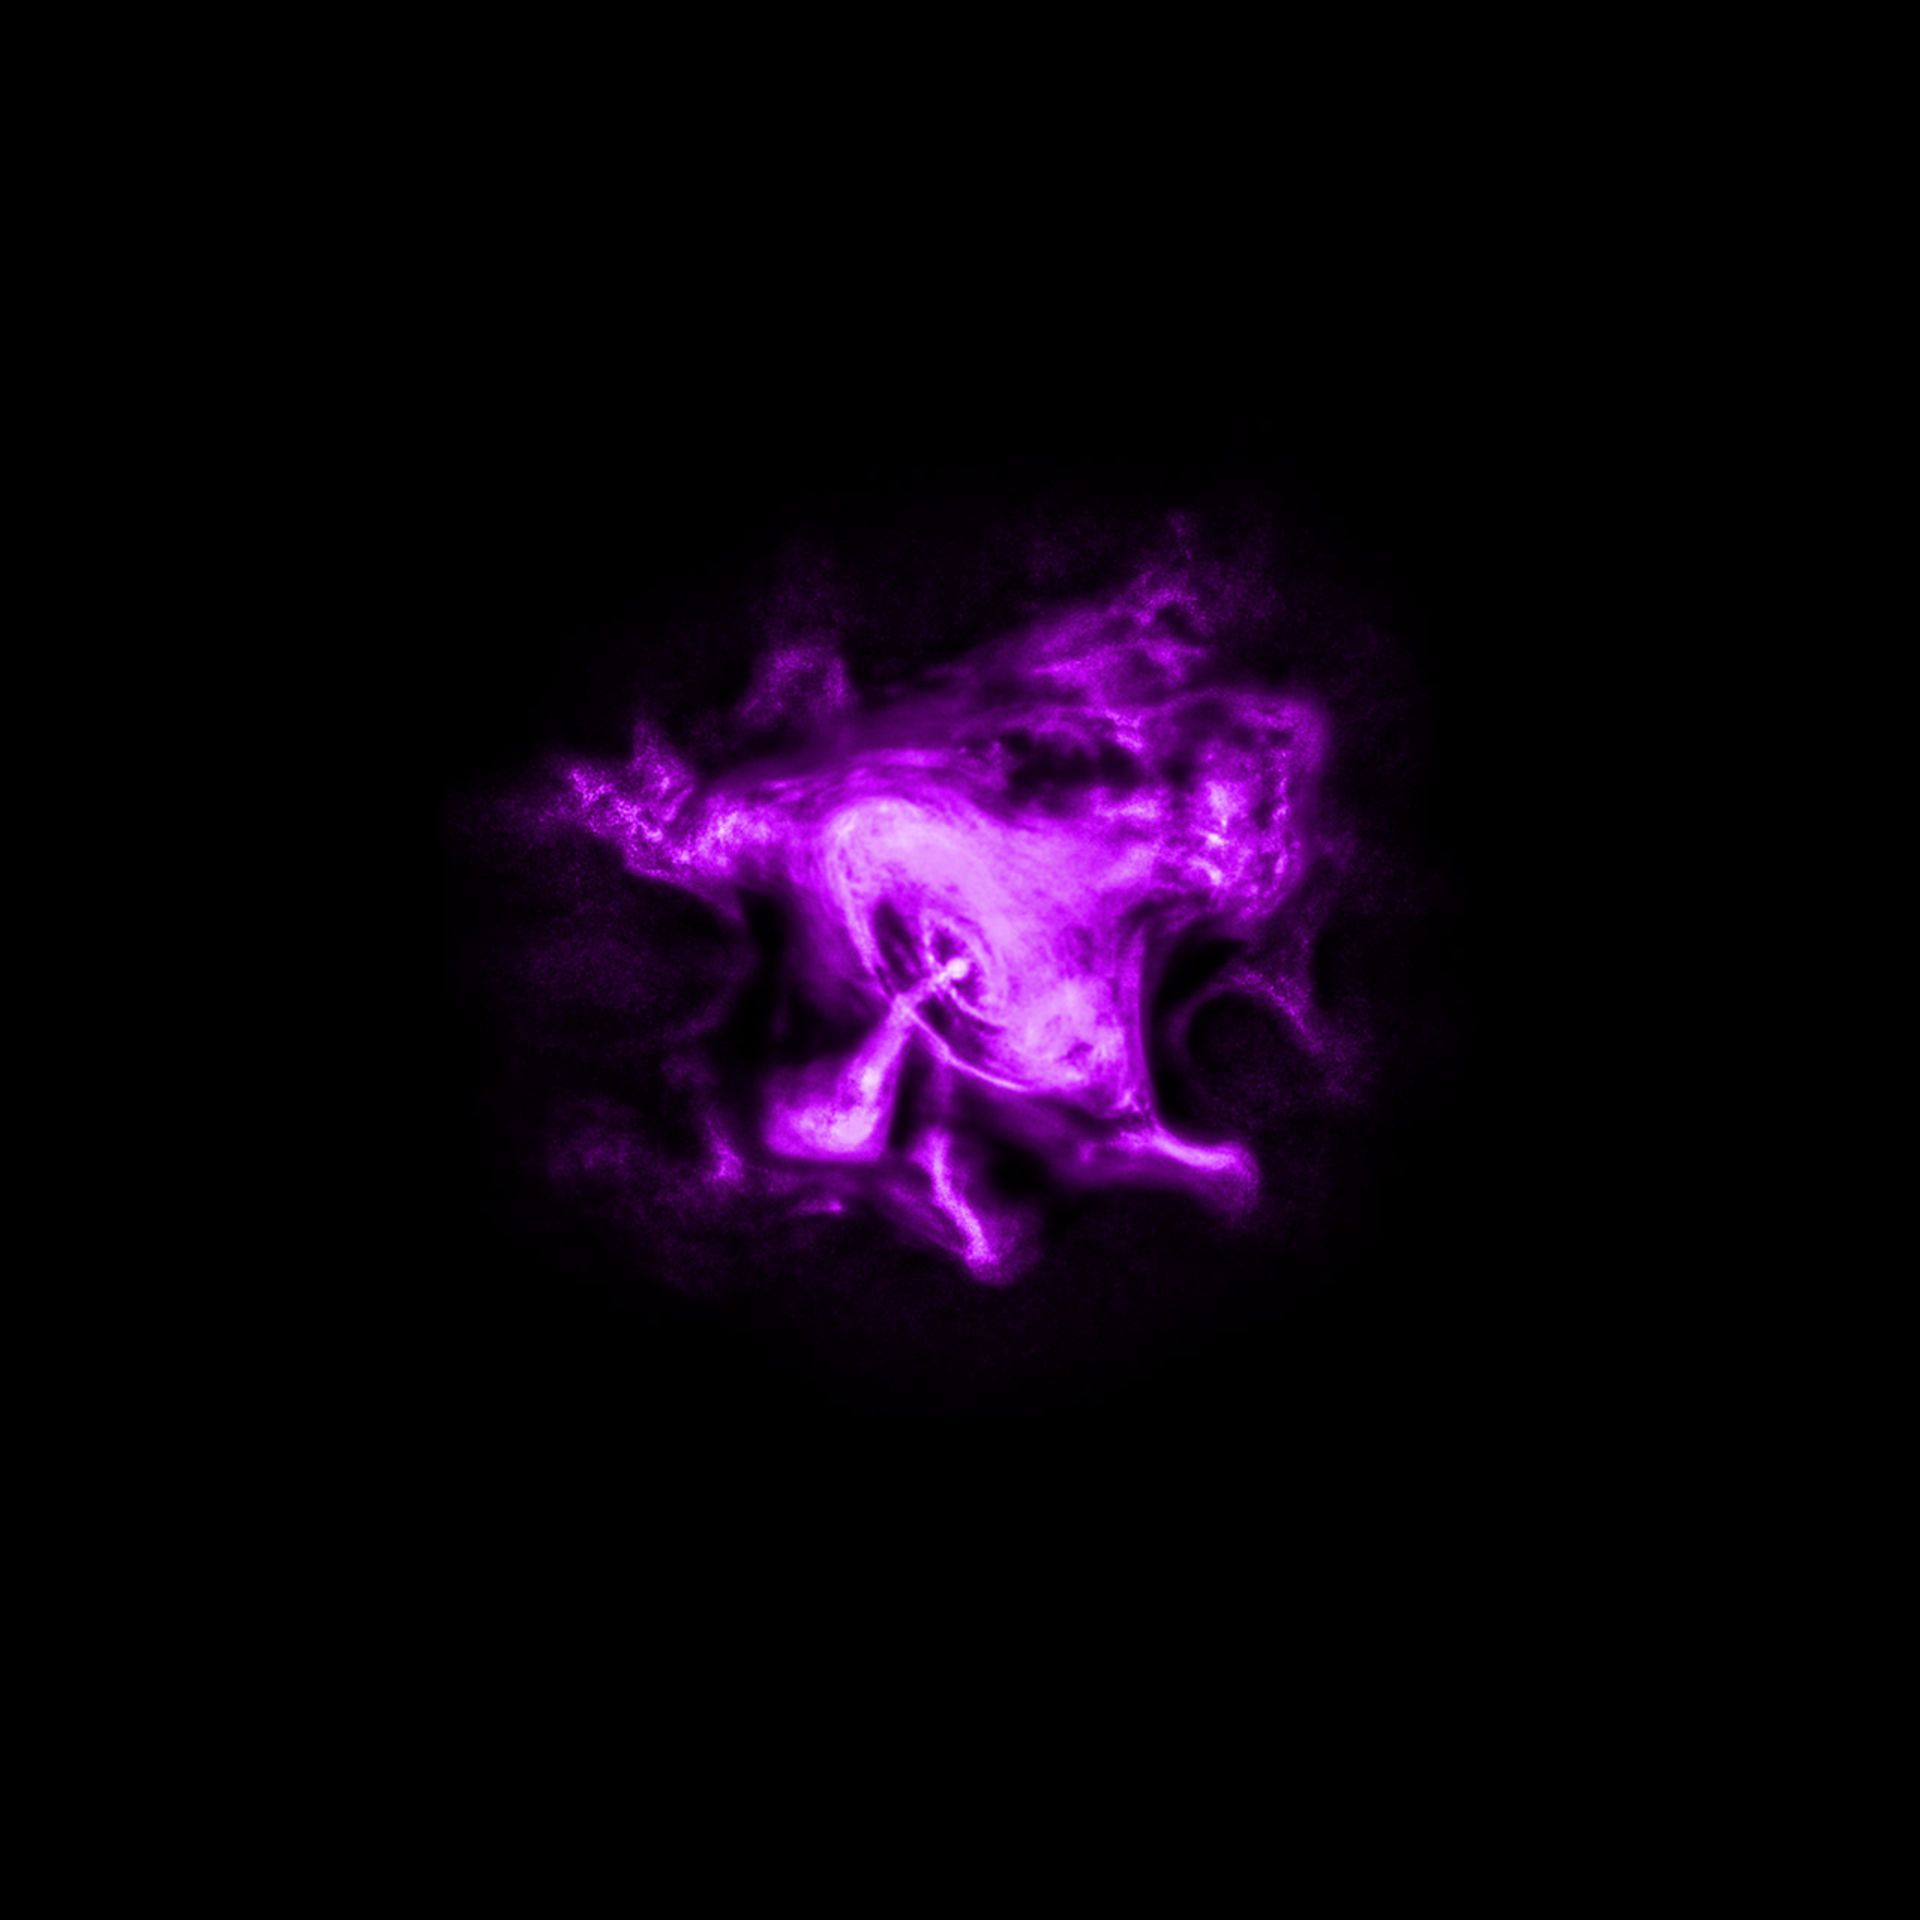 سحابی خرچنگ در پرتو ایکس (تلسکوپ فضایی چاندرا)